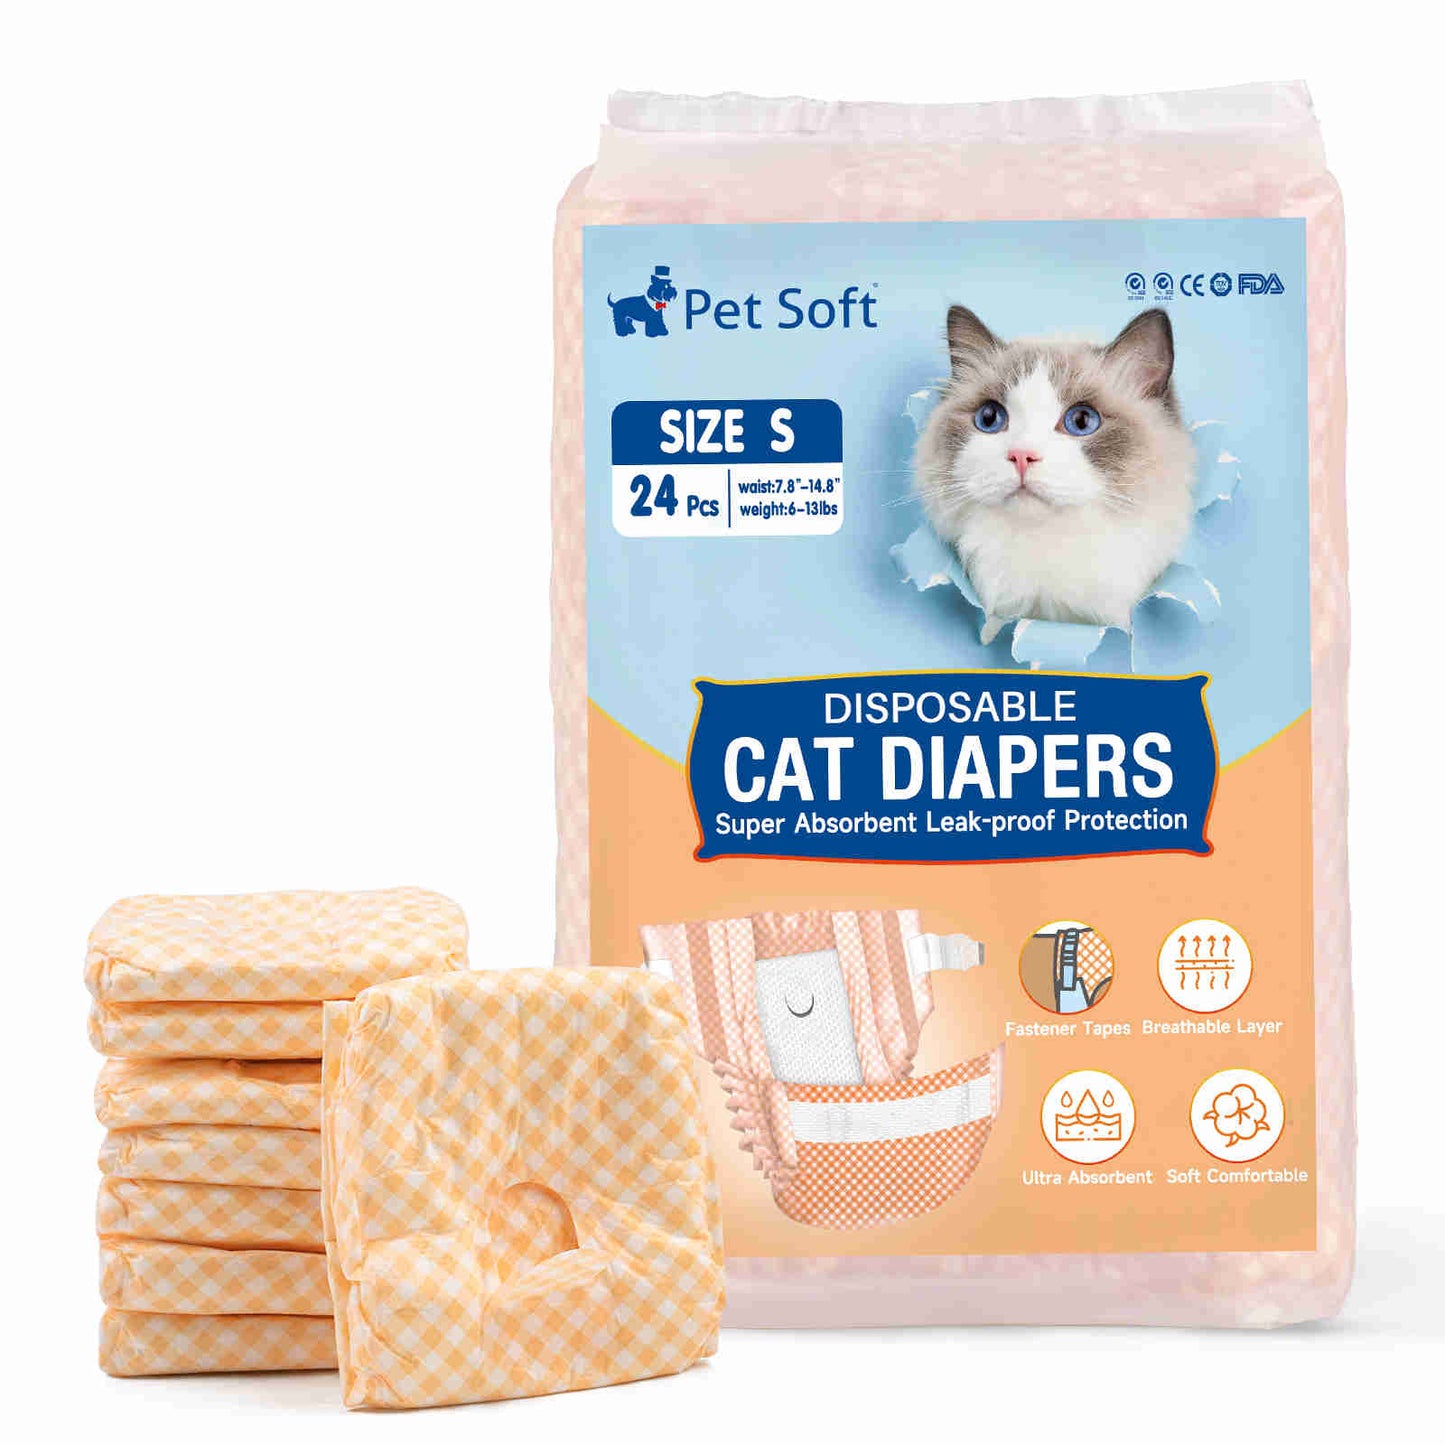 Disposable Cat Diapers, Orange Plaid Pattern, 24 Pcs, 1 Pack